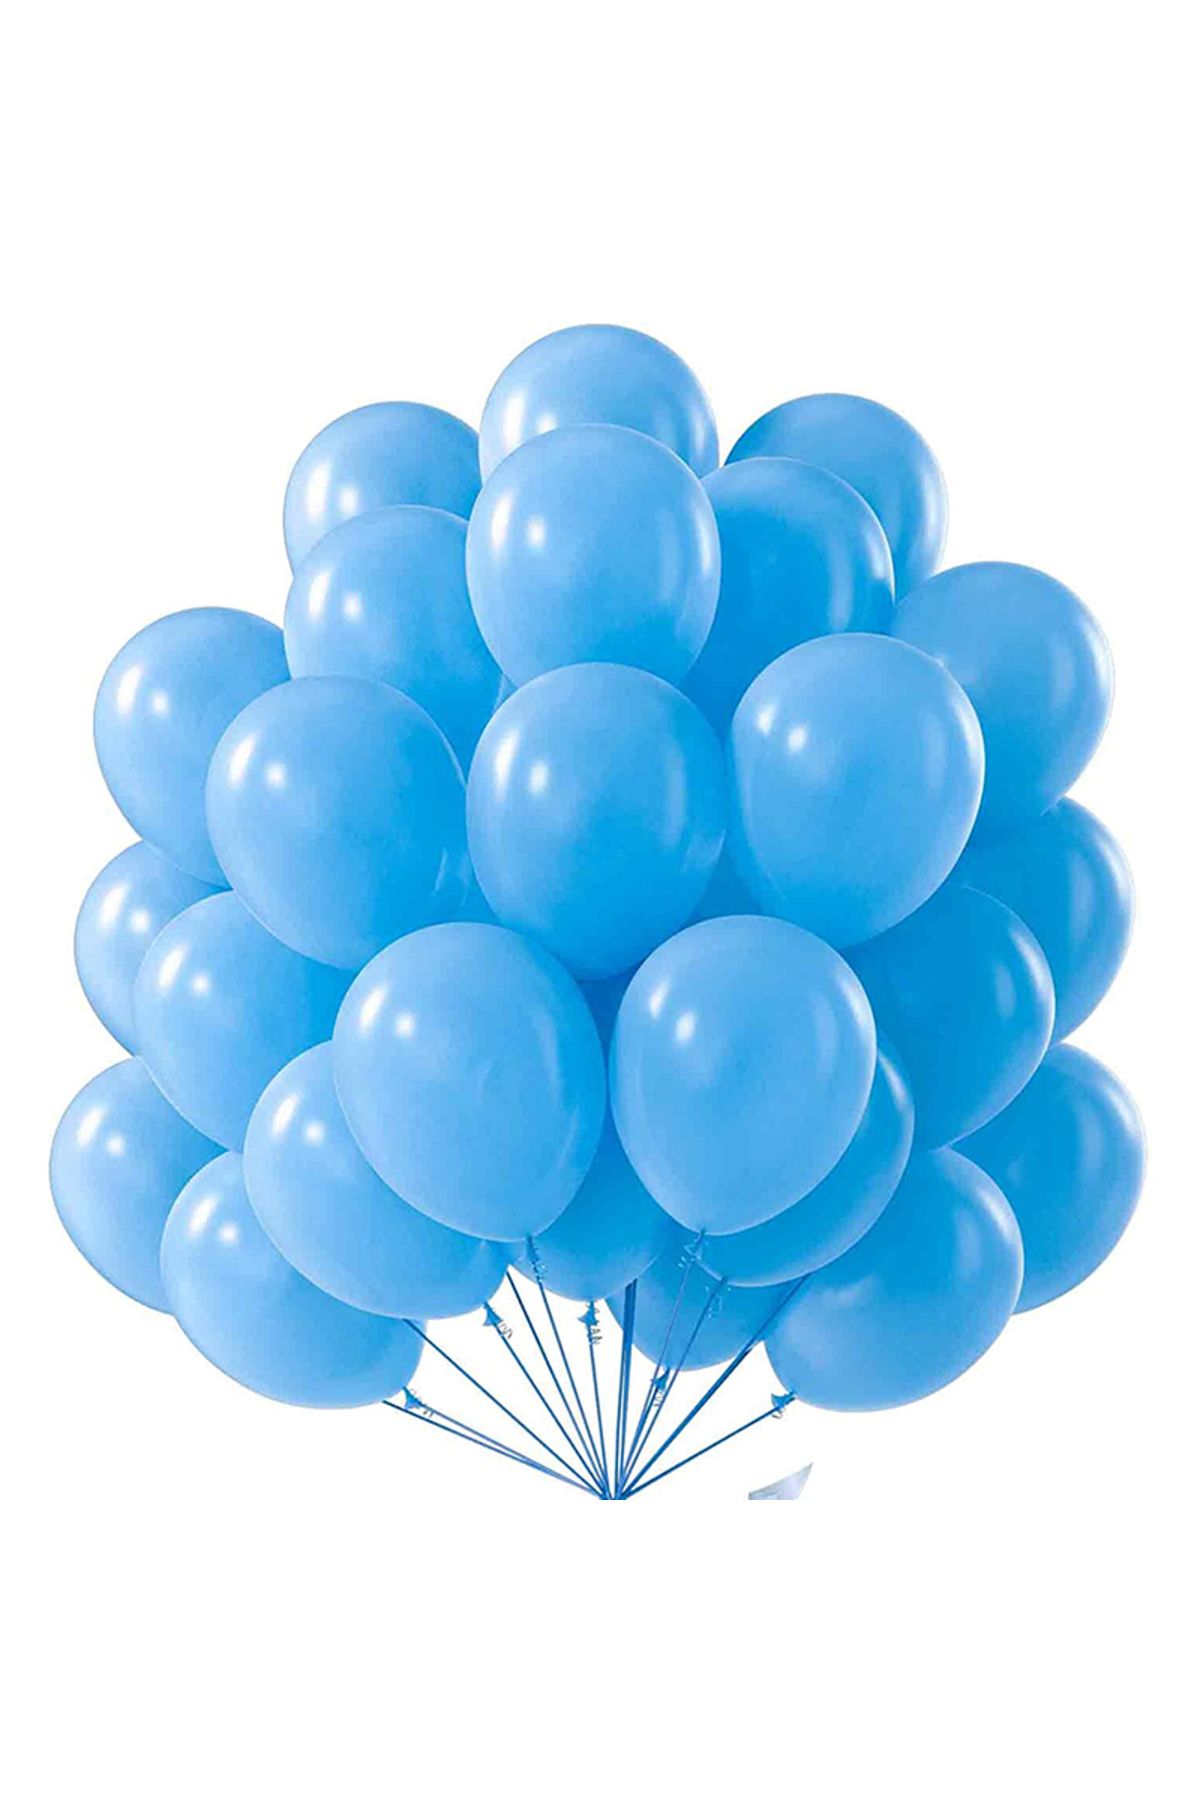 pazariz Lateks Balon Parti Organizasyon Balonu 9/A düğün doğum günü dekorasyon 50 Adet